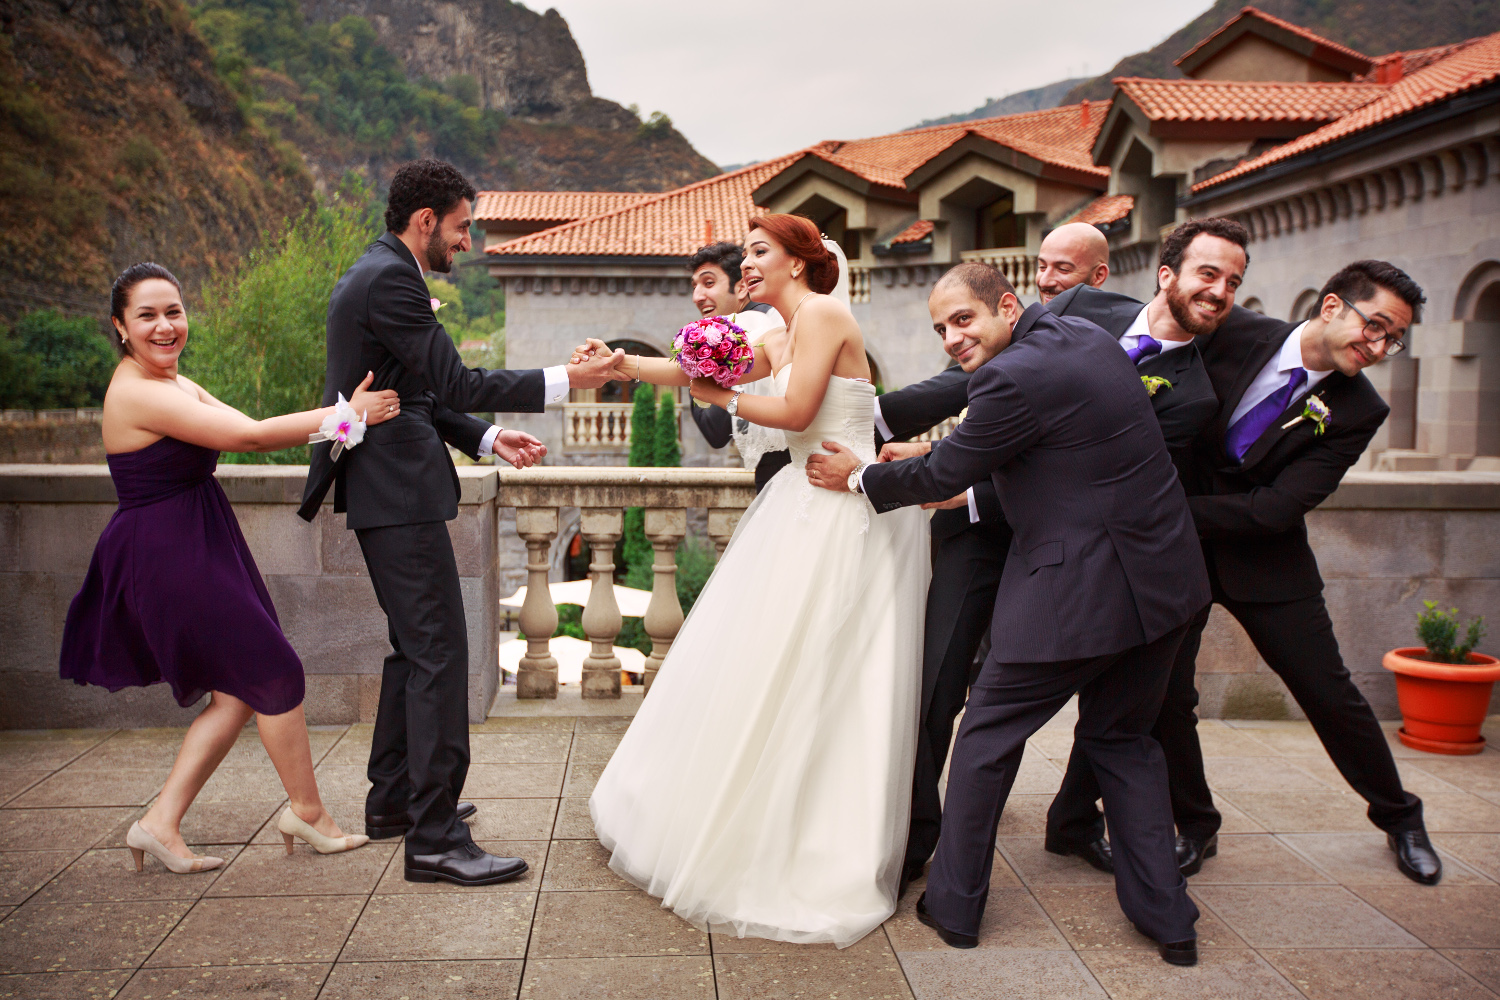 Армяне гуляют красиво. Свадьба в Армении. Армянская свадьба. Свадебная церемония Армения. Свадьба армян.